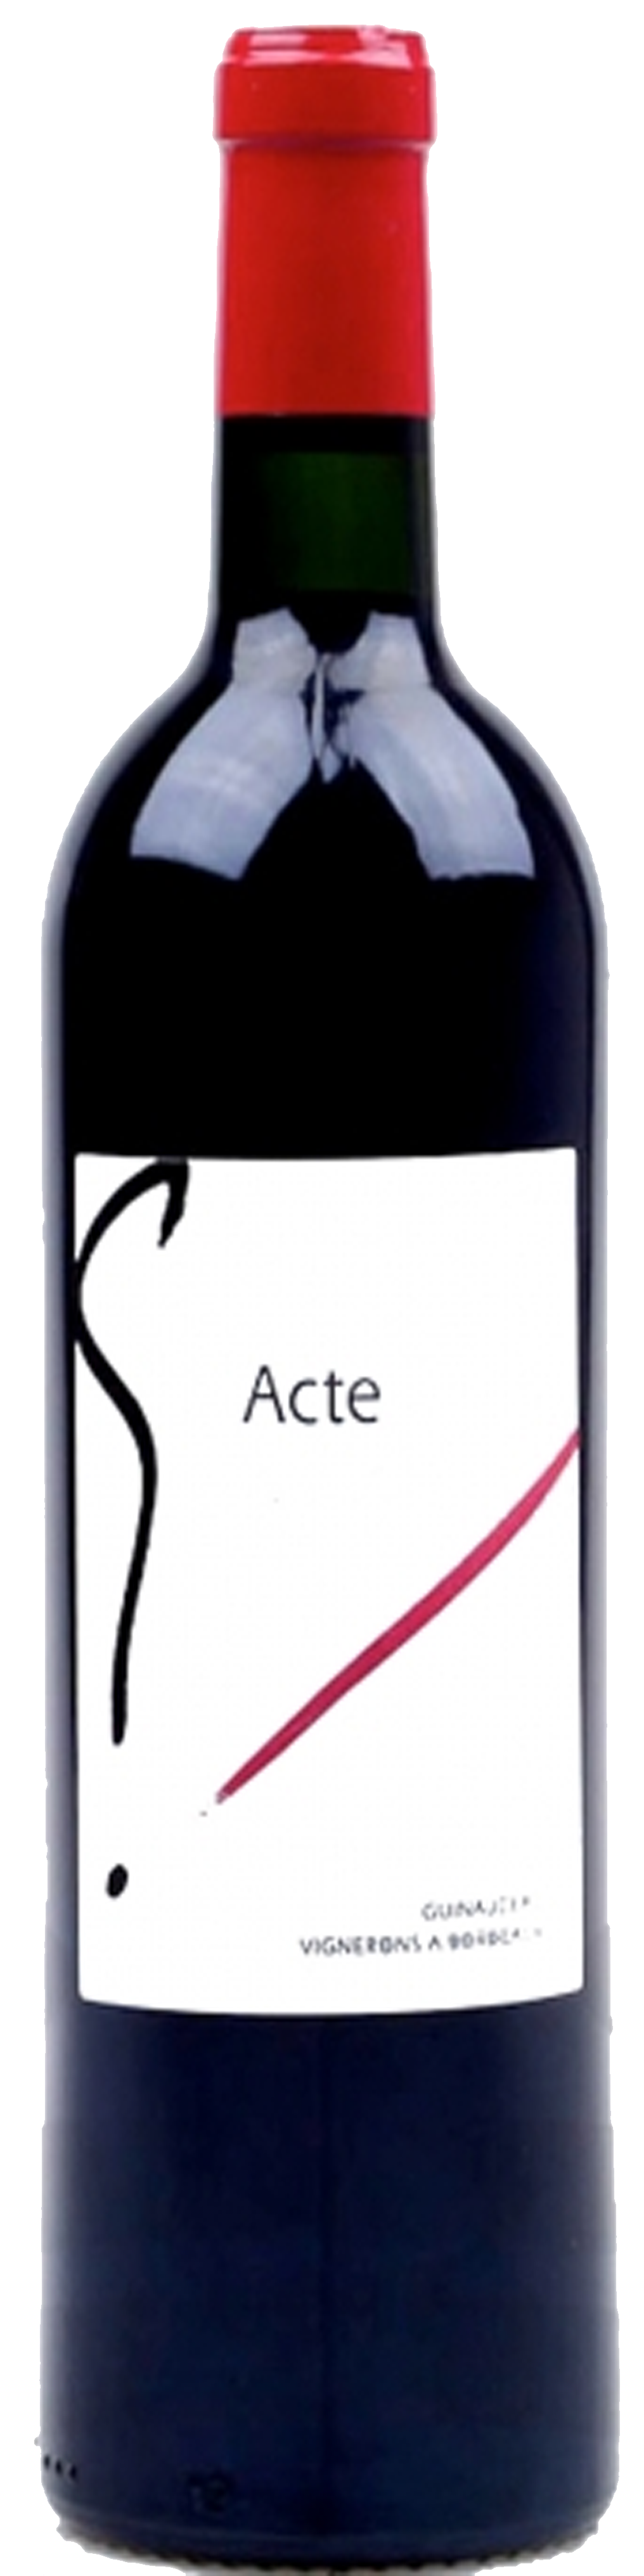 Image of product G'Acte 3, Bordeaux Supérieur